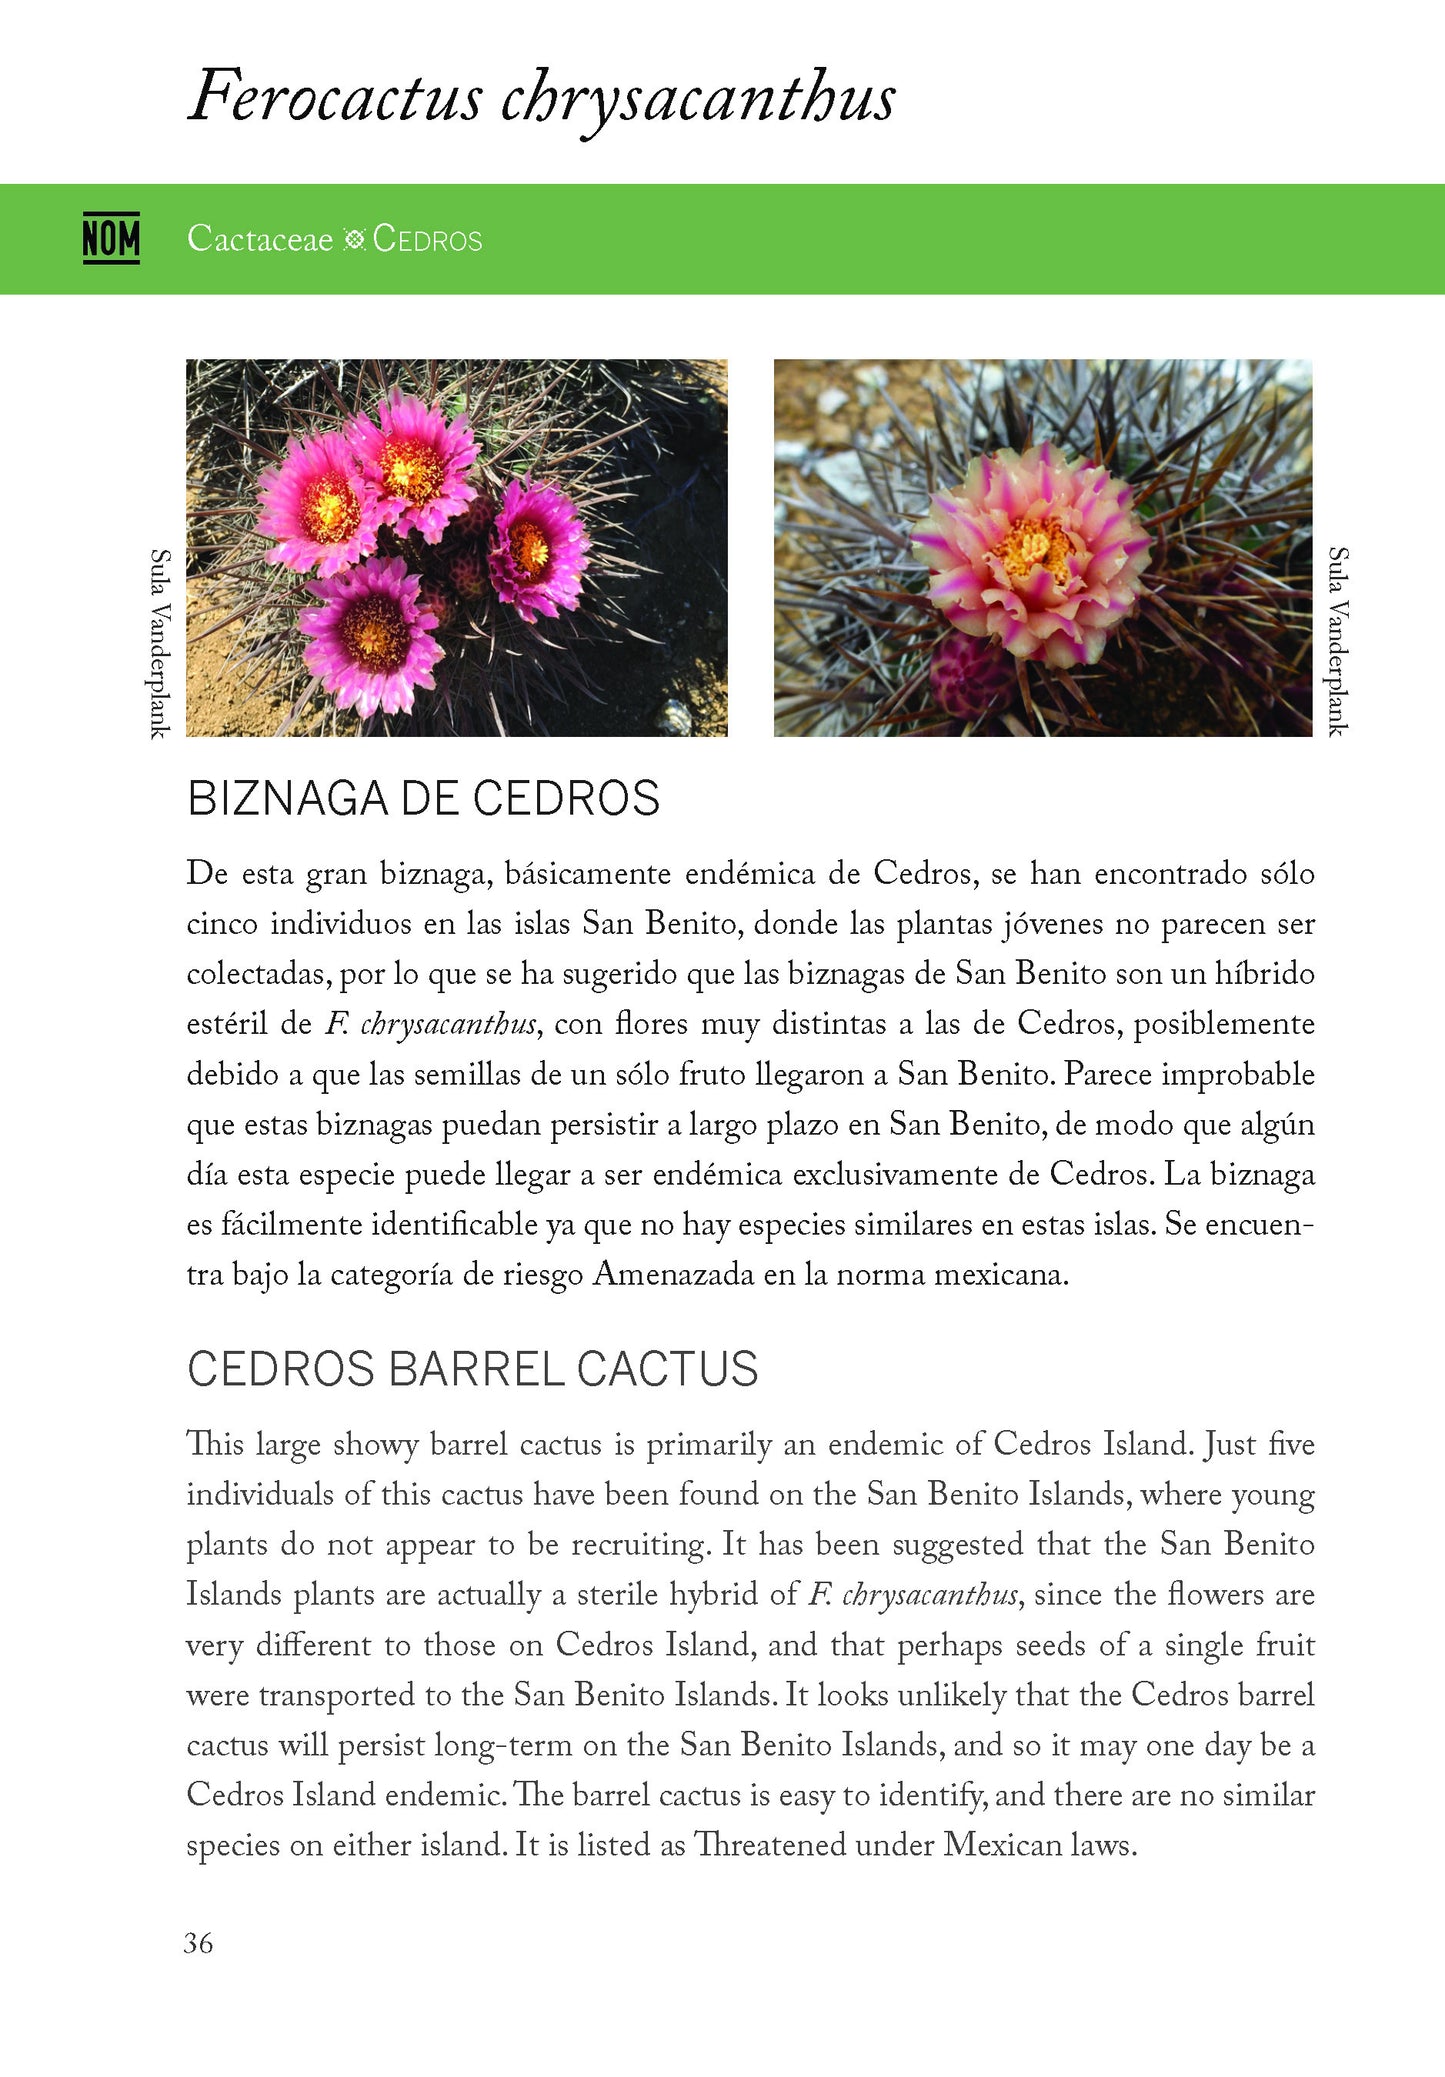 Plantas y animales únicos de las islas del Pacifico de Baja California - Unique plants and animals of the Baja California Pacific Islands